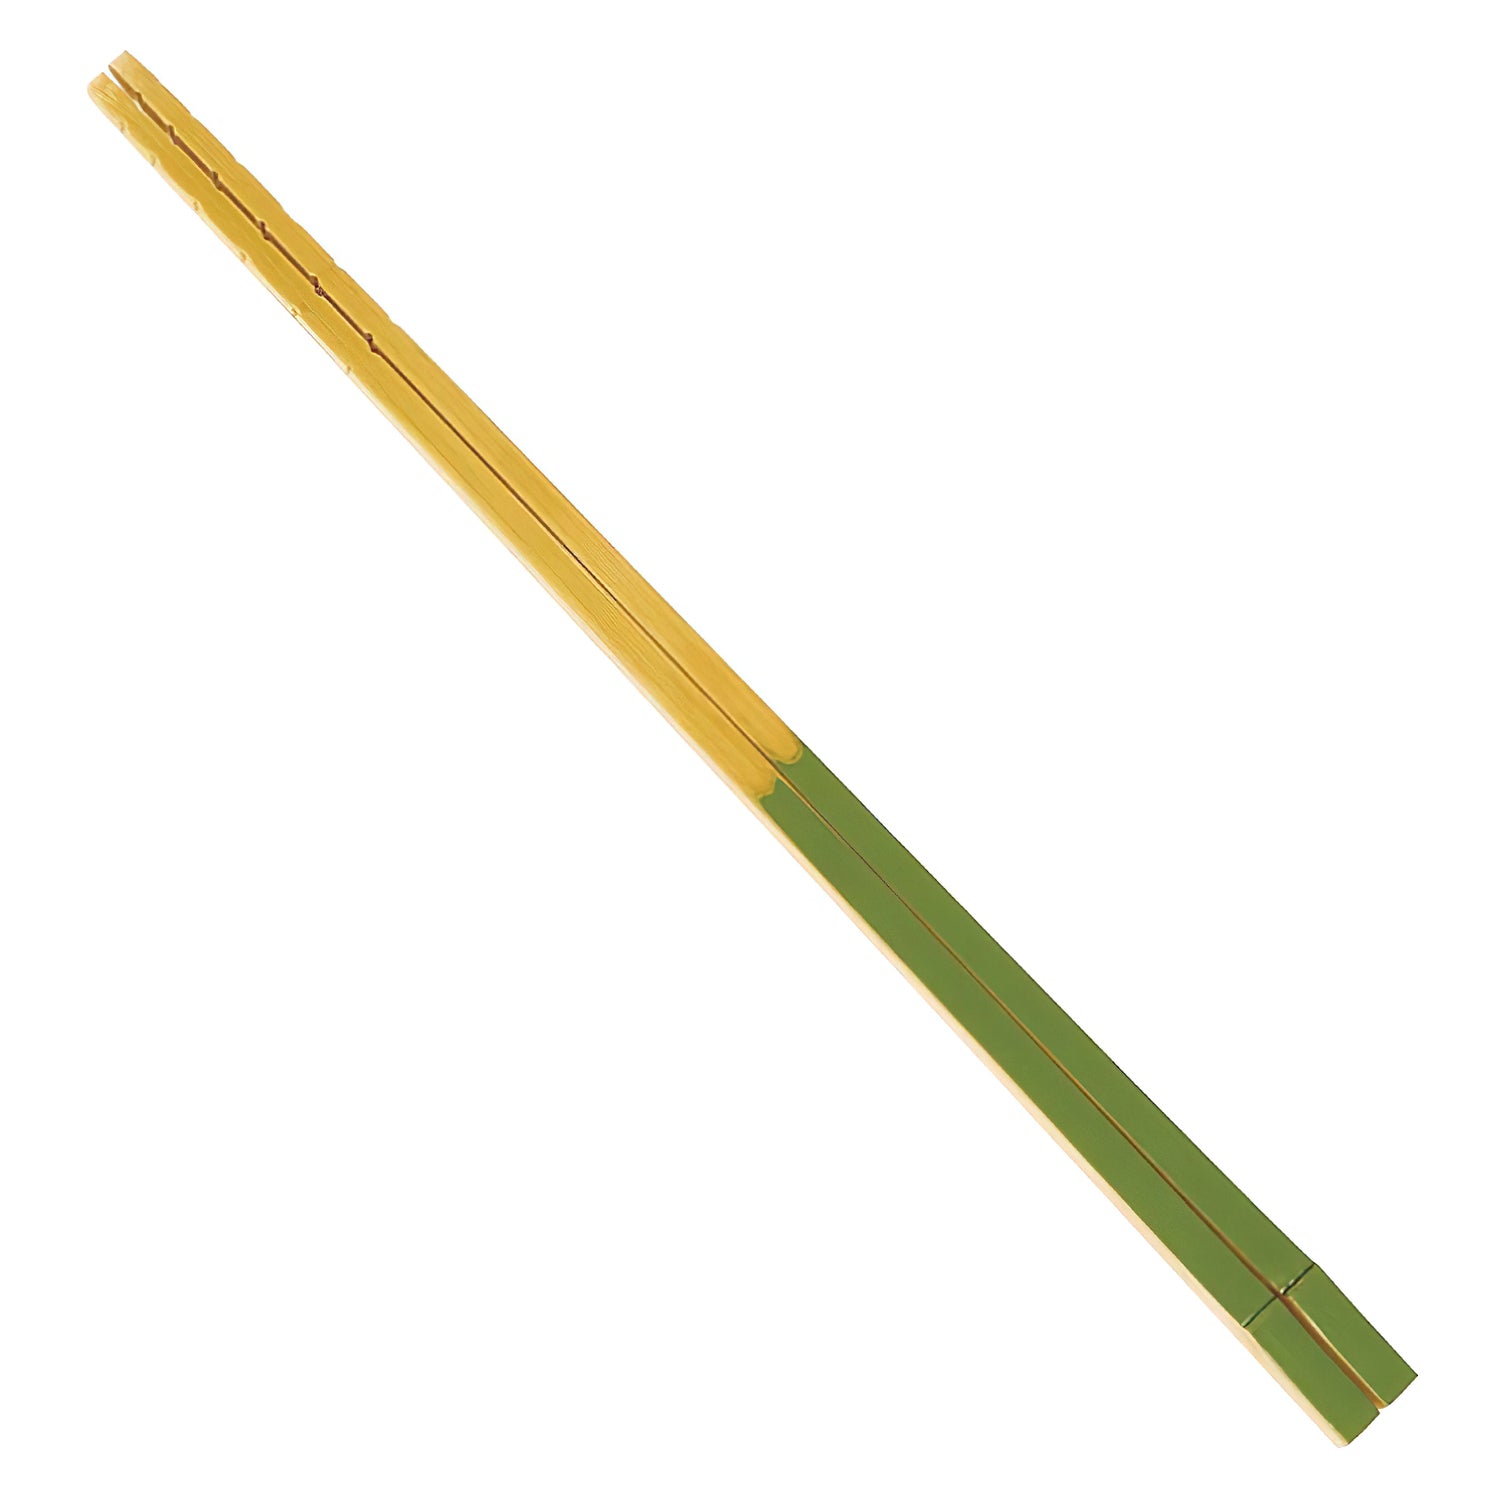 EBM Wooden Tempura Batter Mixing Chopsticks